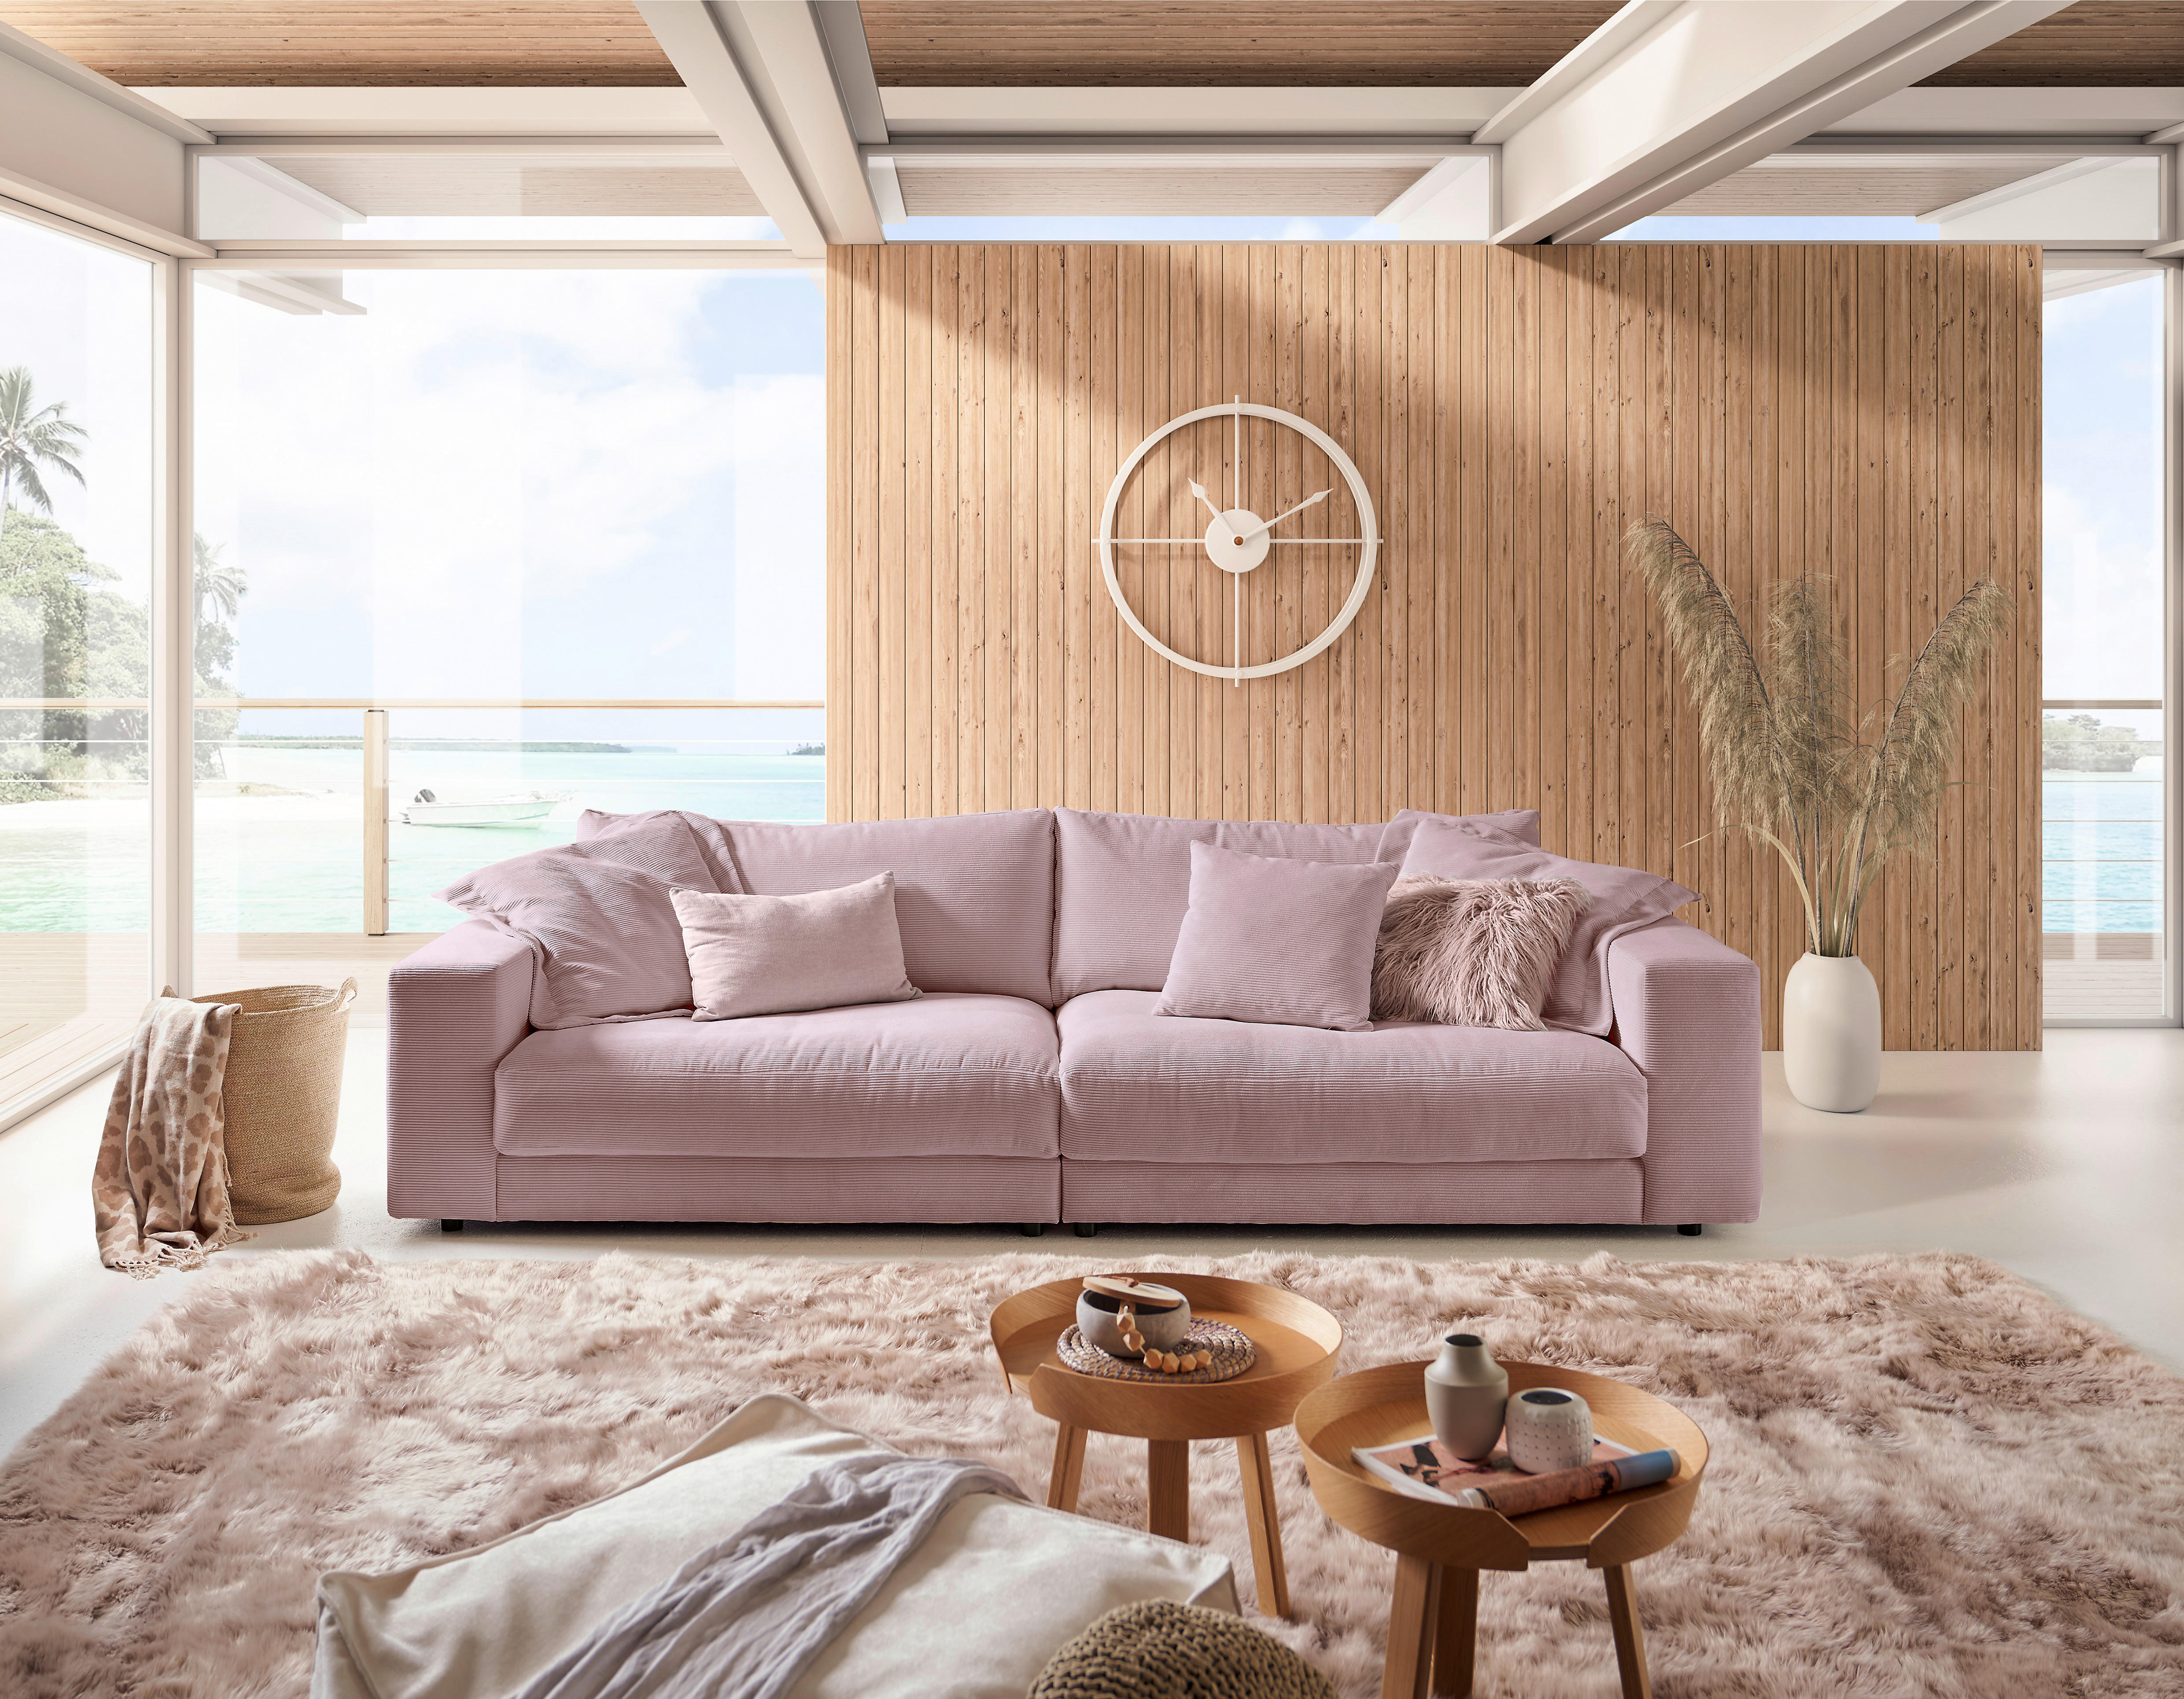 MEGASOFA Feincord Altrosa  - Schwarz/Altrosa, Design, Kunststoff/Textil (290/86/127cm) - Pure Home Lifestyle